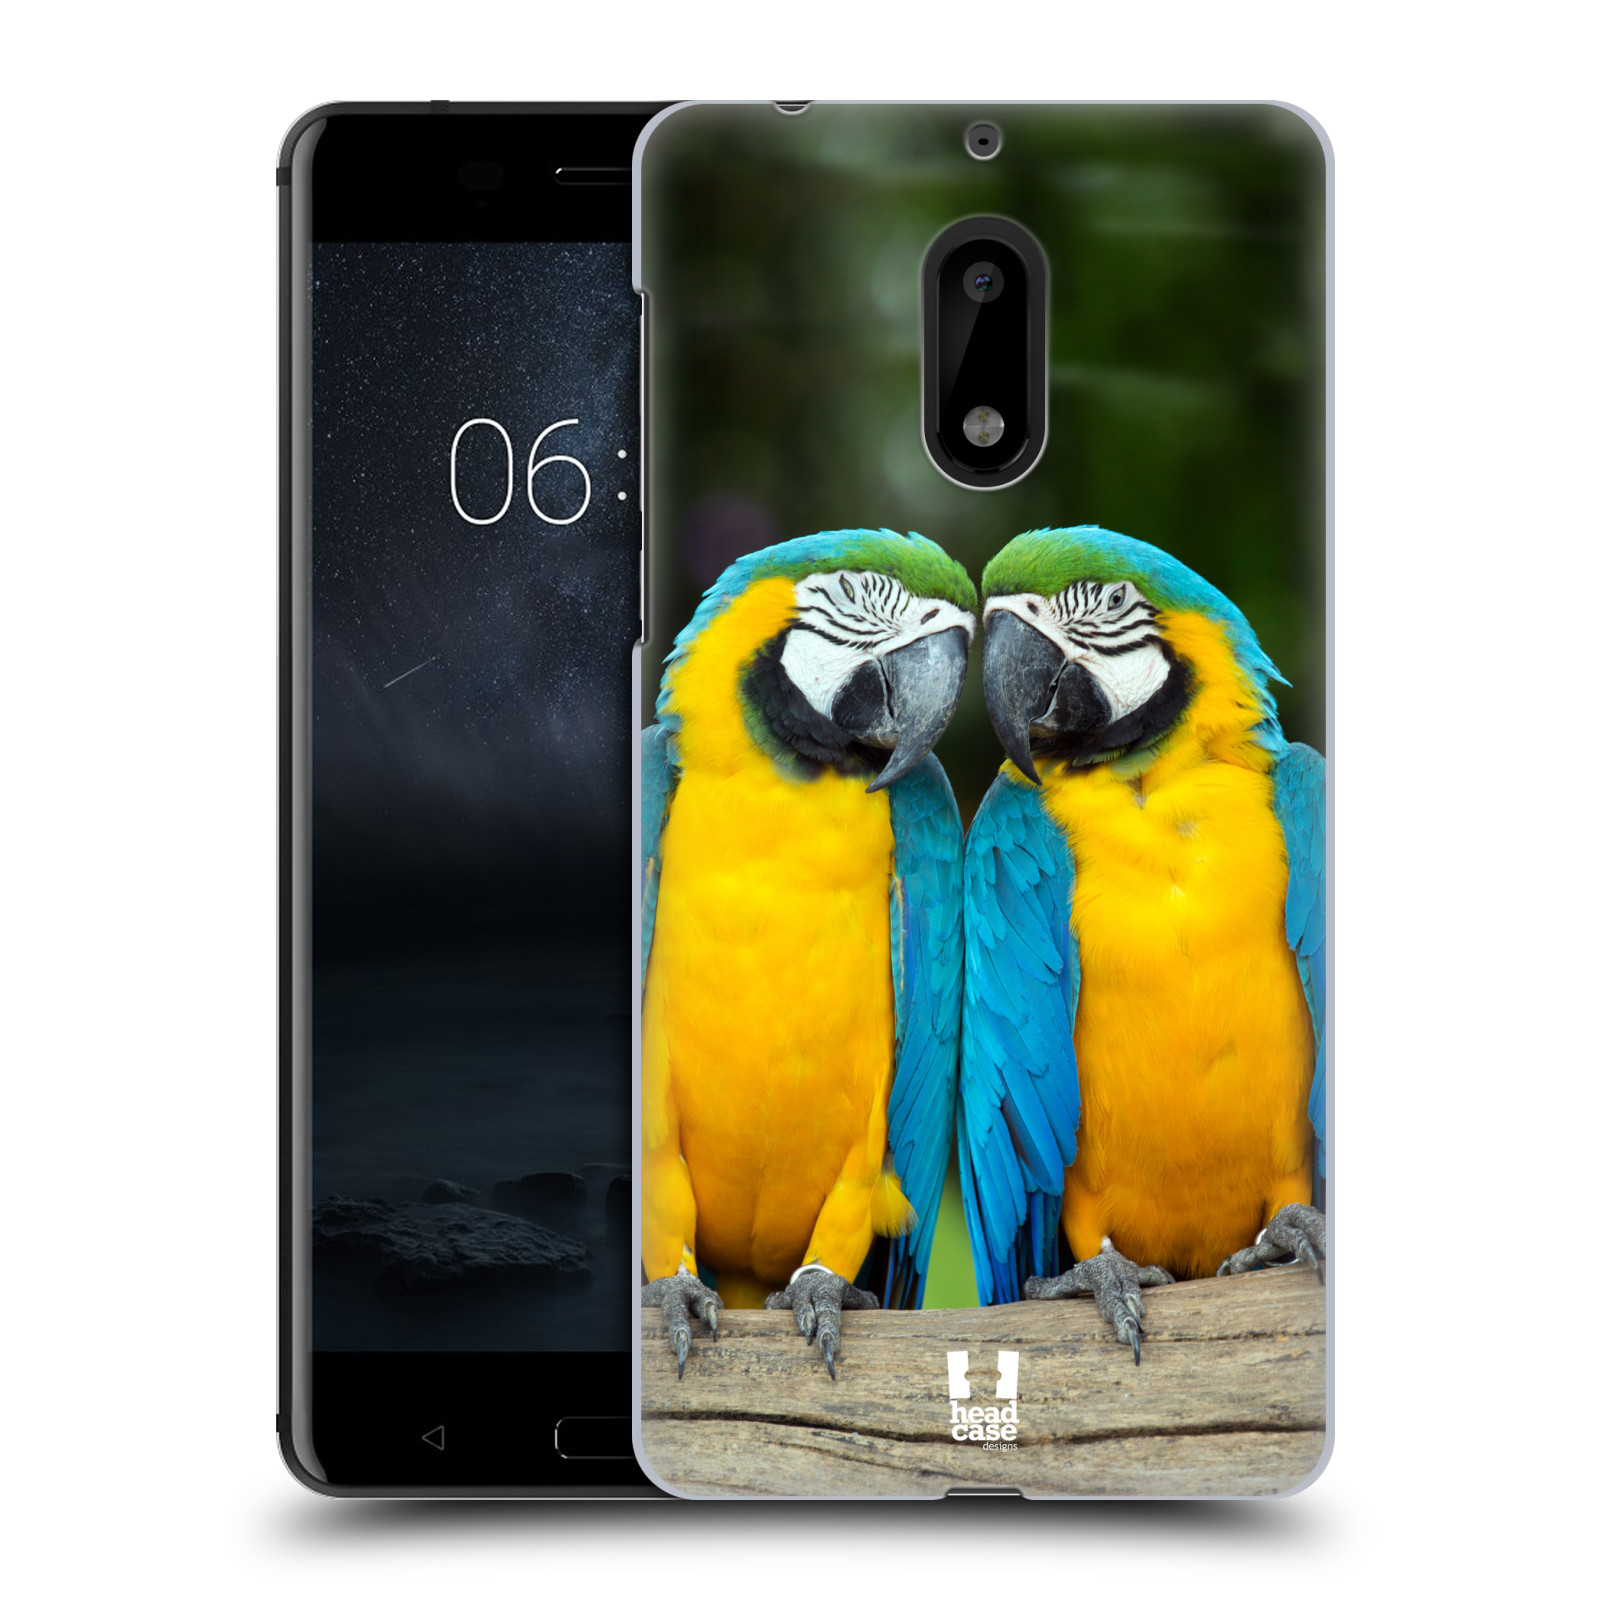 HEAD CASE plastový obal na mobil Nokia 6 vzor slavná zvířata foto dva papoušci